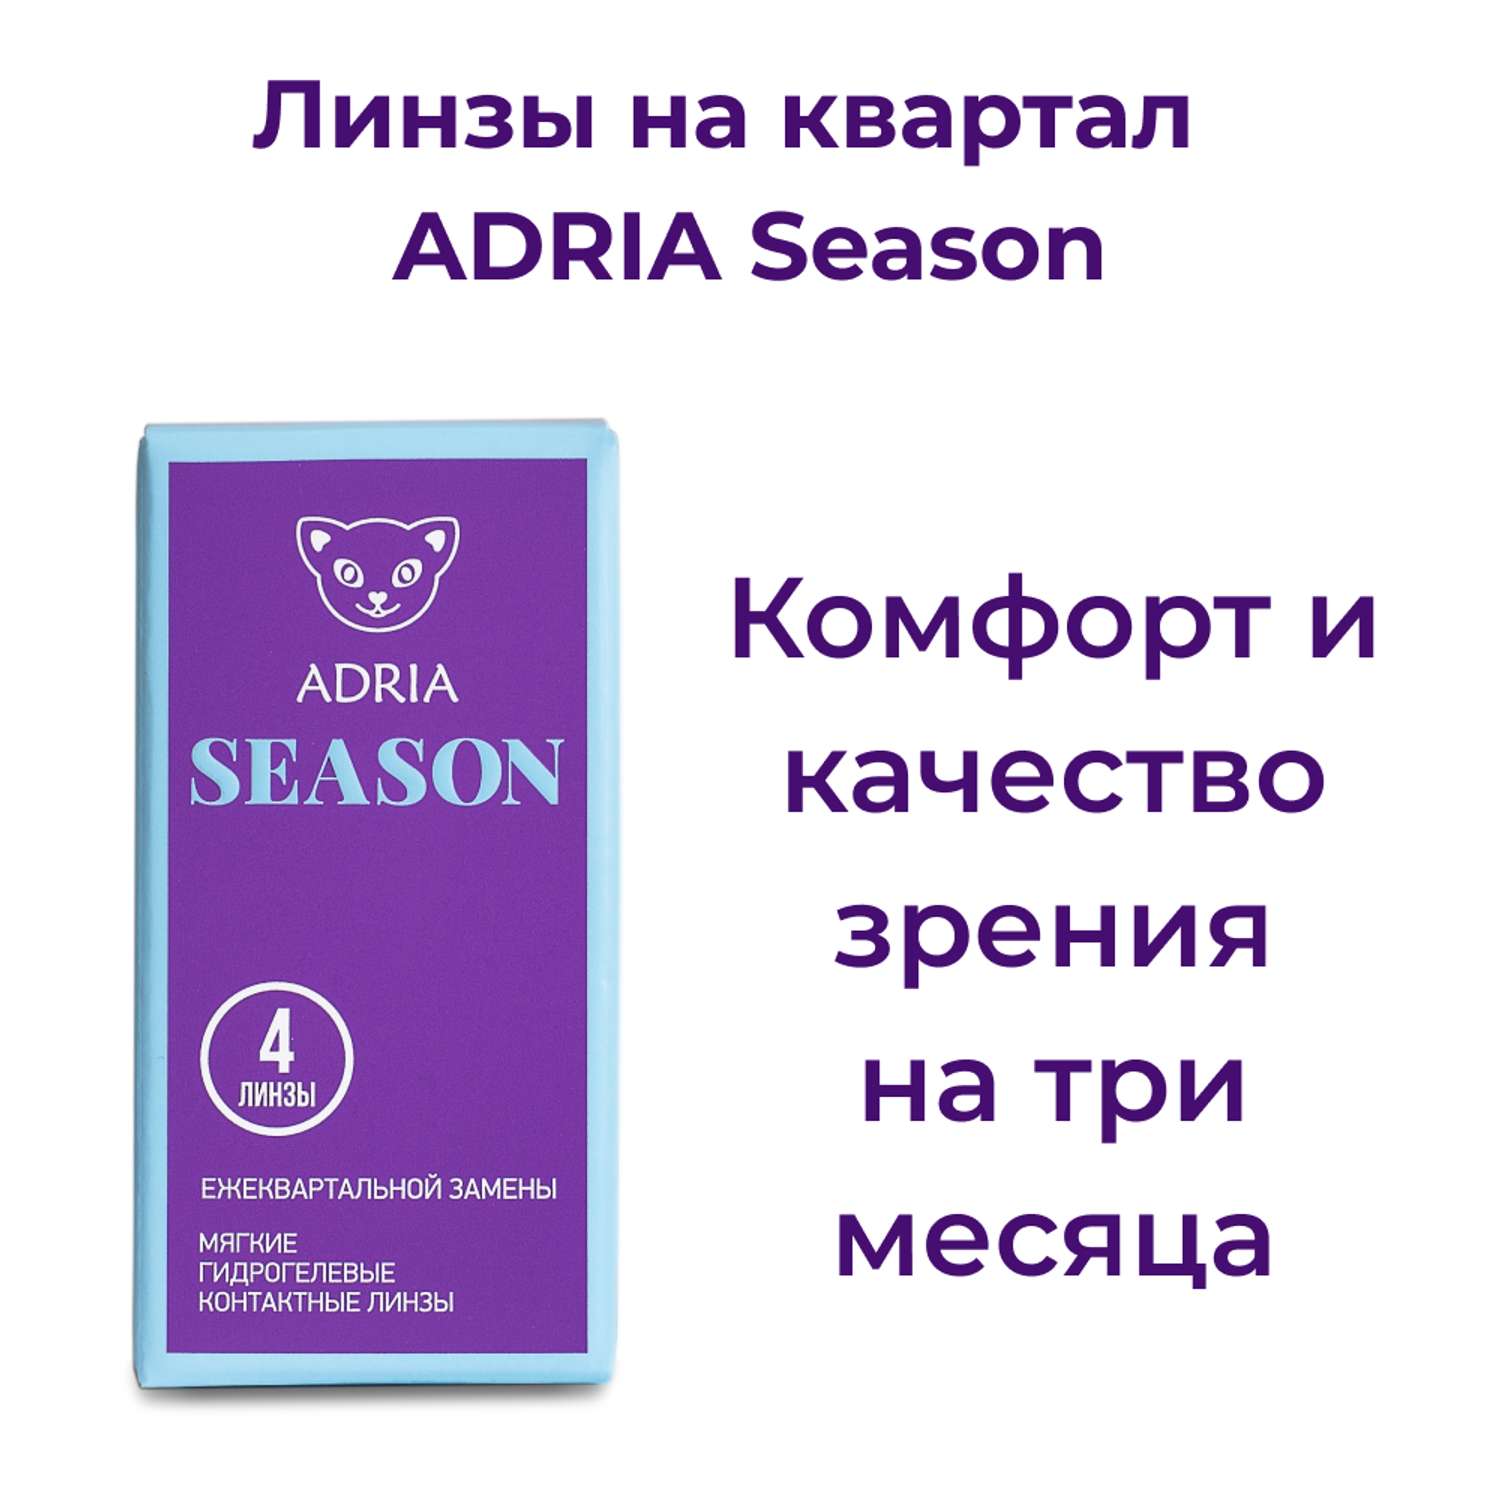 Контактные линзы ADRIA Season 4 линзы R 8.6 -2.50 - фото 2